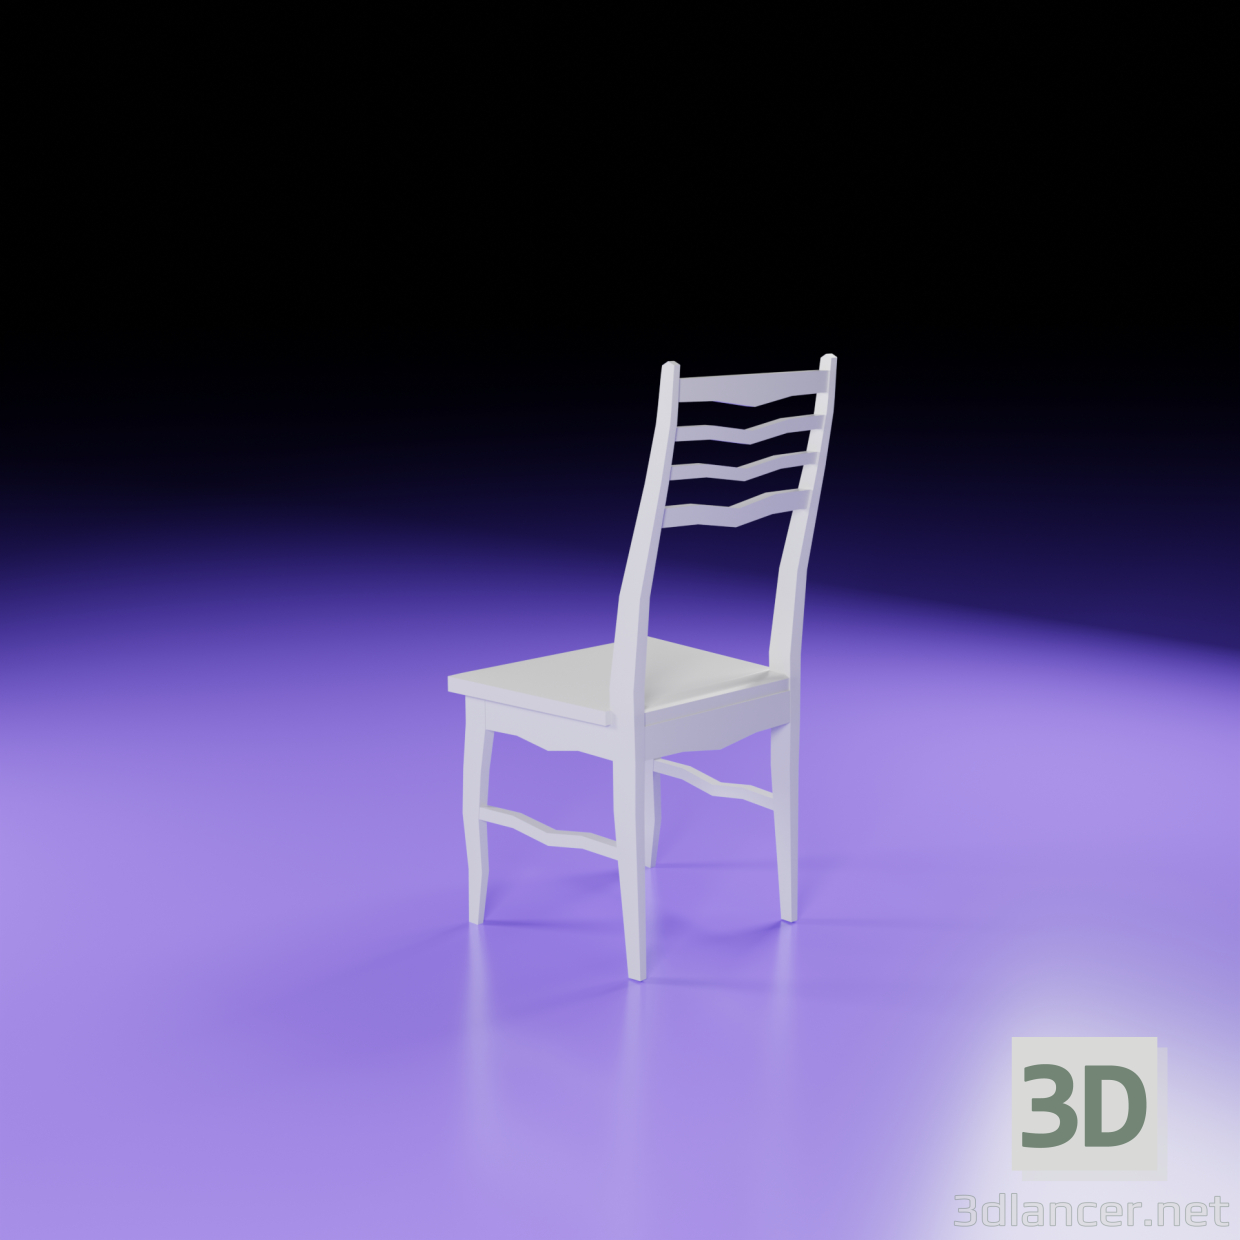 Silla Eugenio m16 3D modelo Compro - render